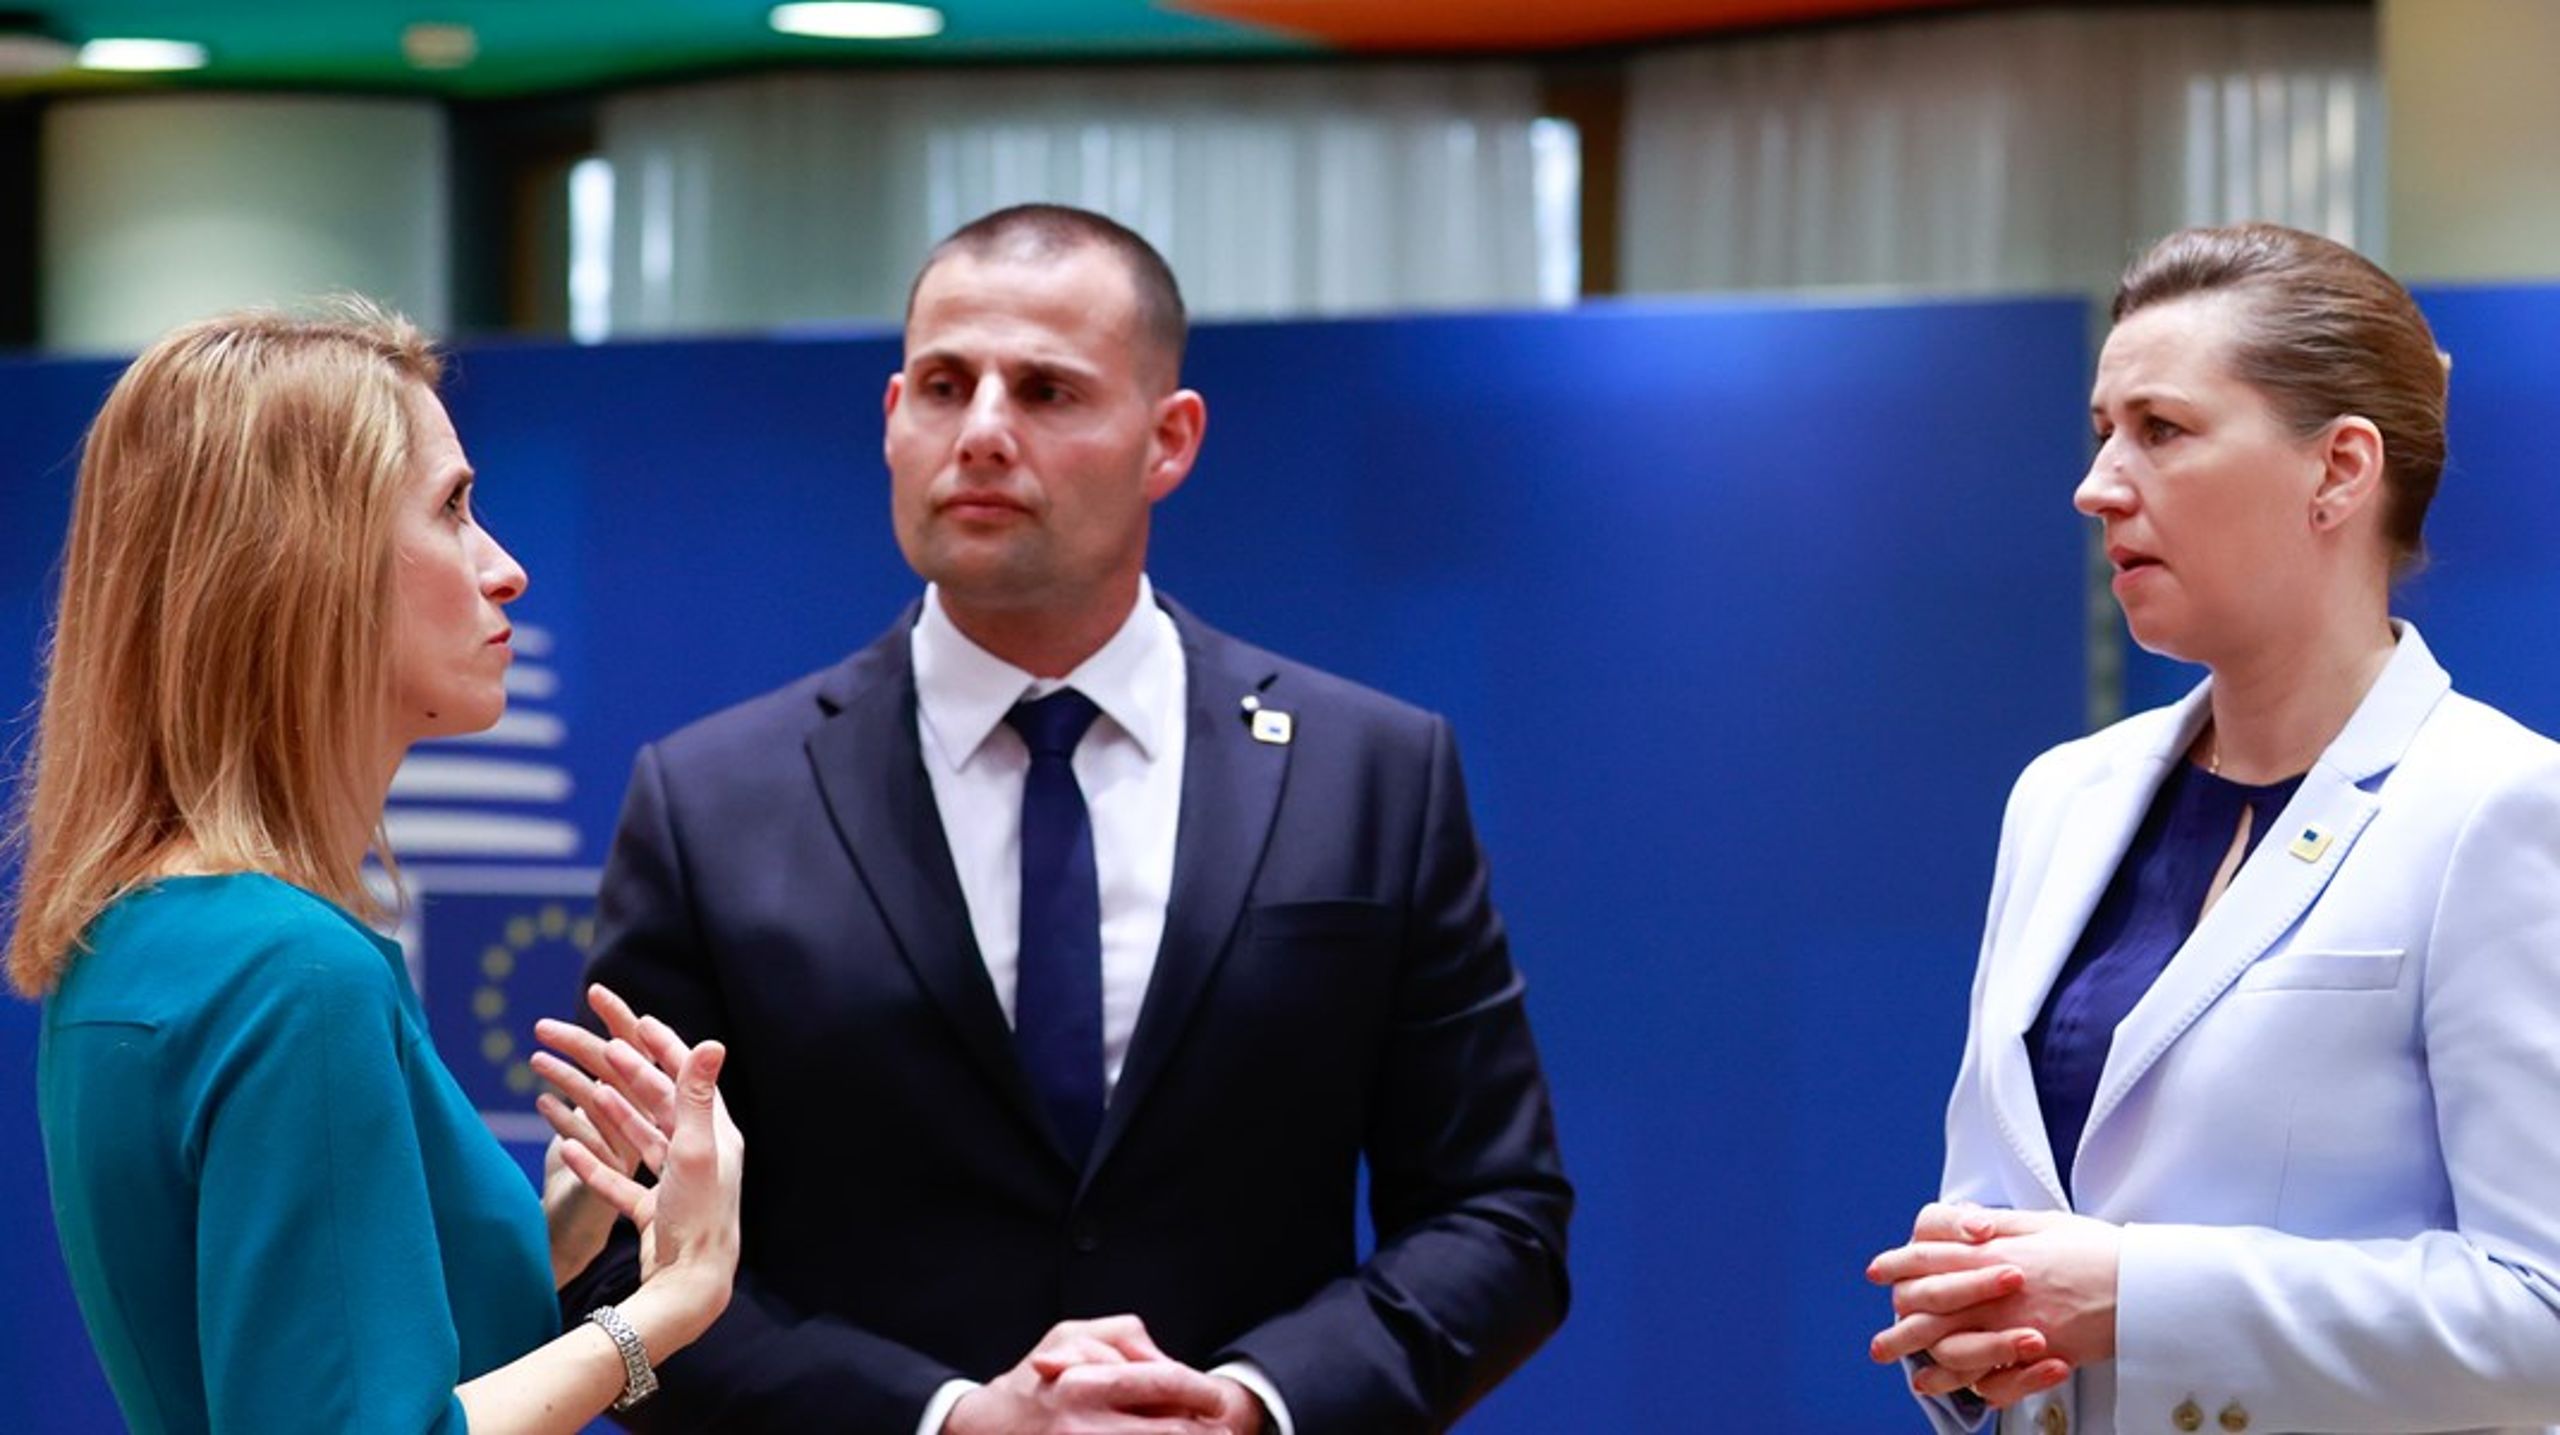 Danmarks statsminister, Mette Frederiksen, med sine kollegaer fra Estland, premierminister Kaja Kallas, og Malta, premierminister Robert Abela, til topmøde i Det Europæiske Råd.